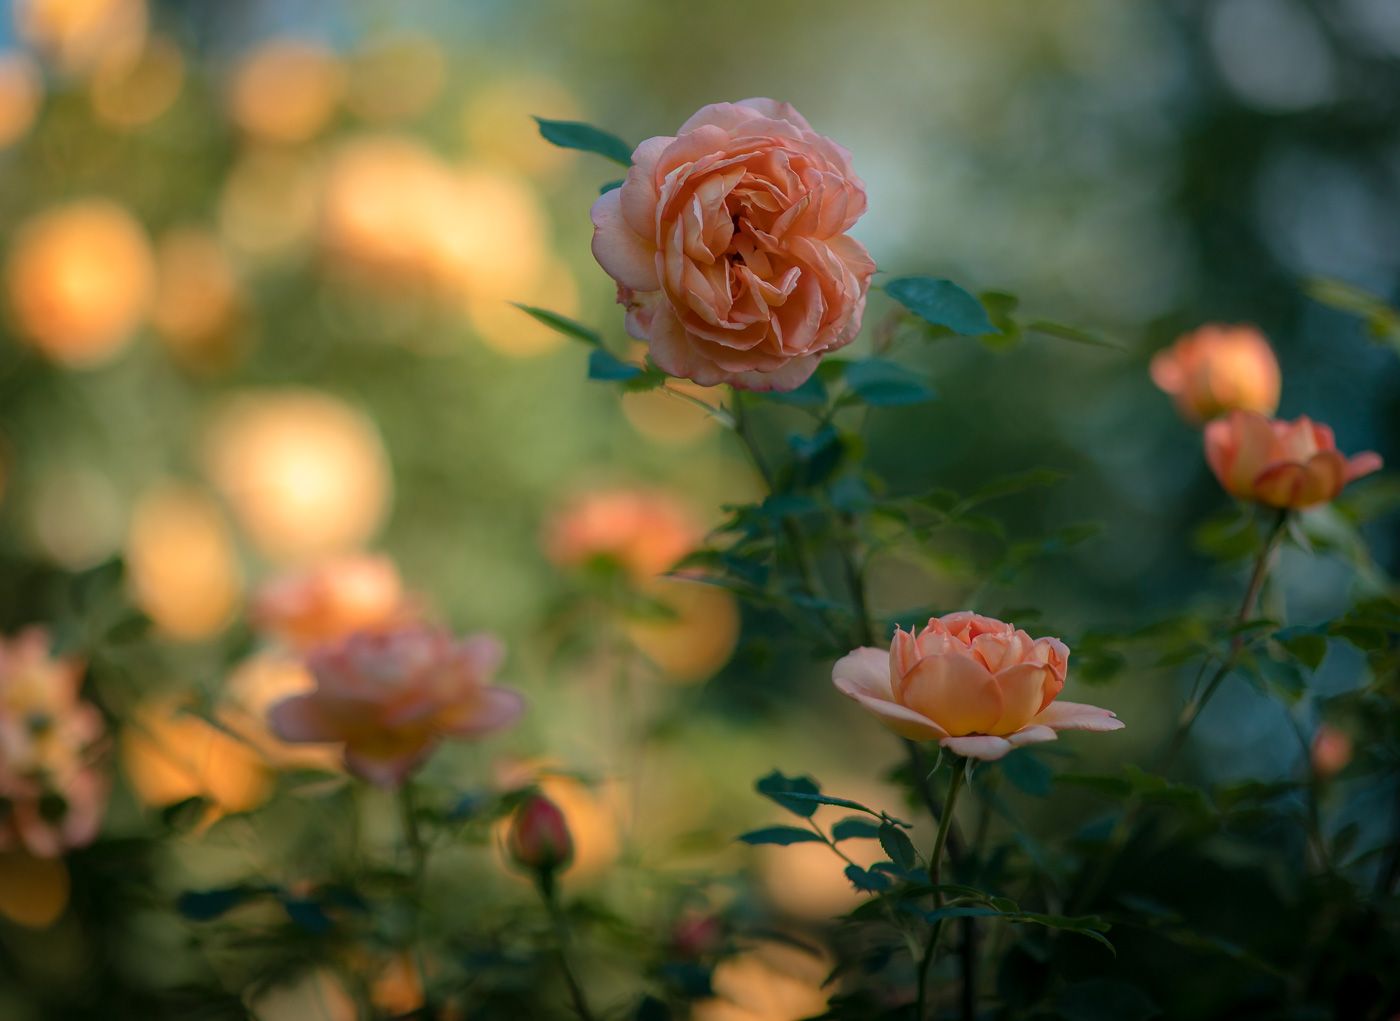 flowers, garden, lady of shalott, rose, цветы, садовые, леди шелот, роза, Алексей Юденков